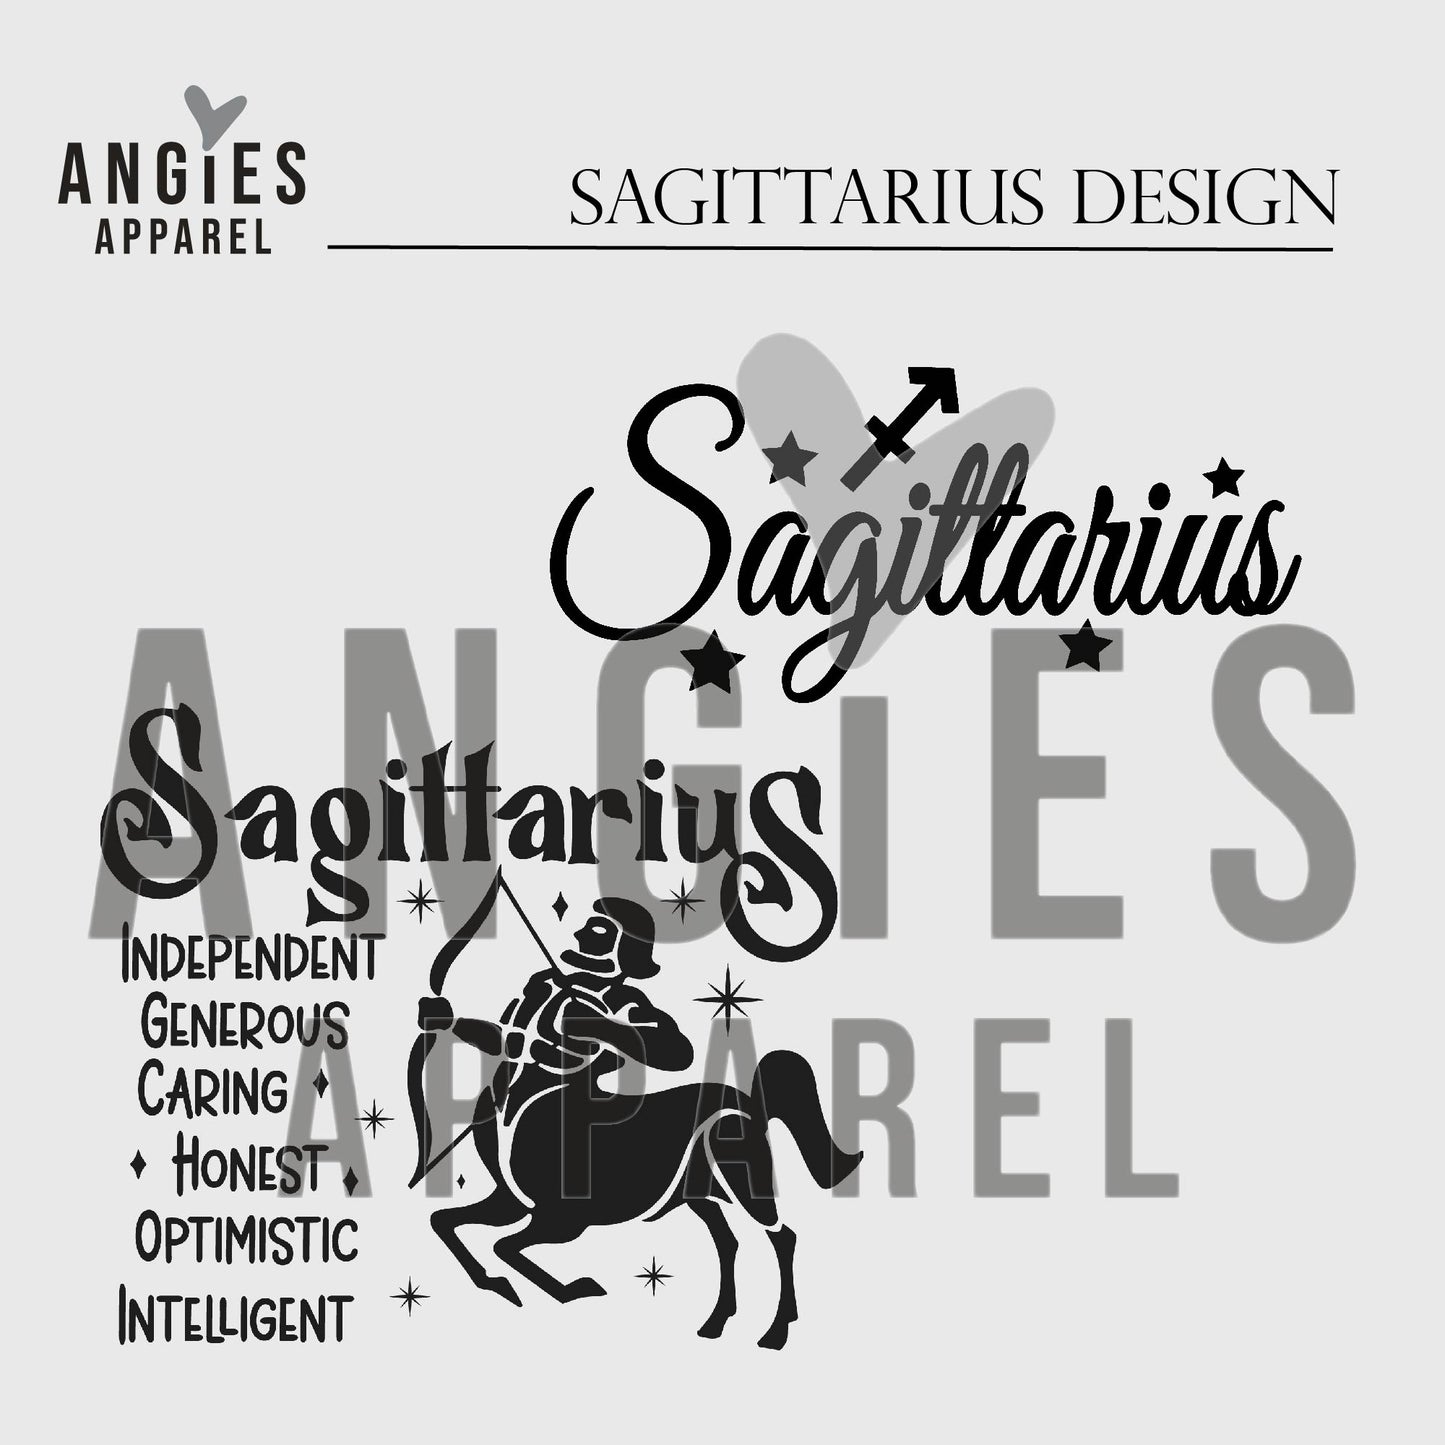 1. Sagittarius